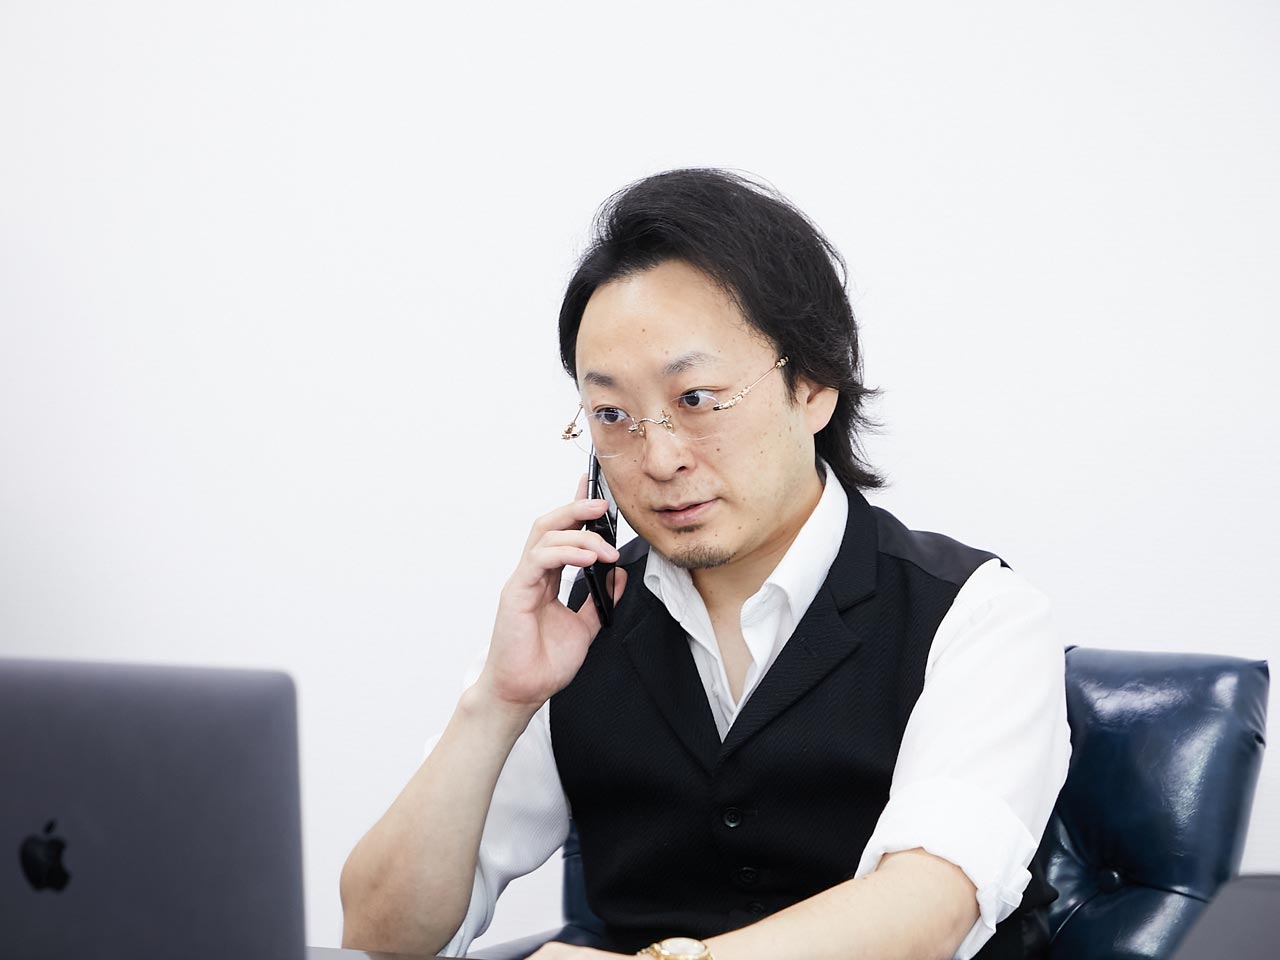 代表取締役社長である村岡佑紀氏が起業を志し続け、満を持してスタートしたITベンチャーだ。